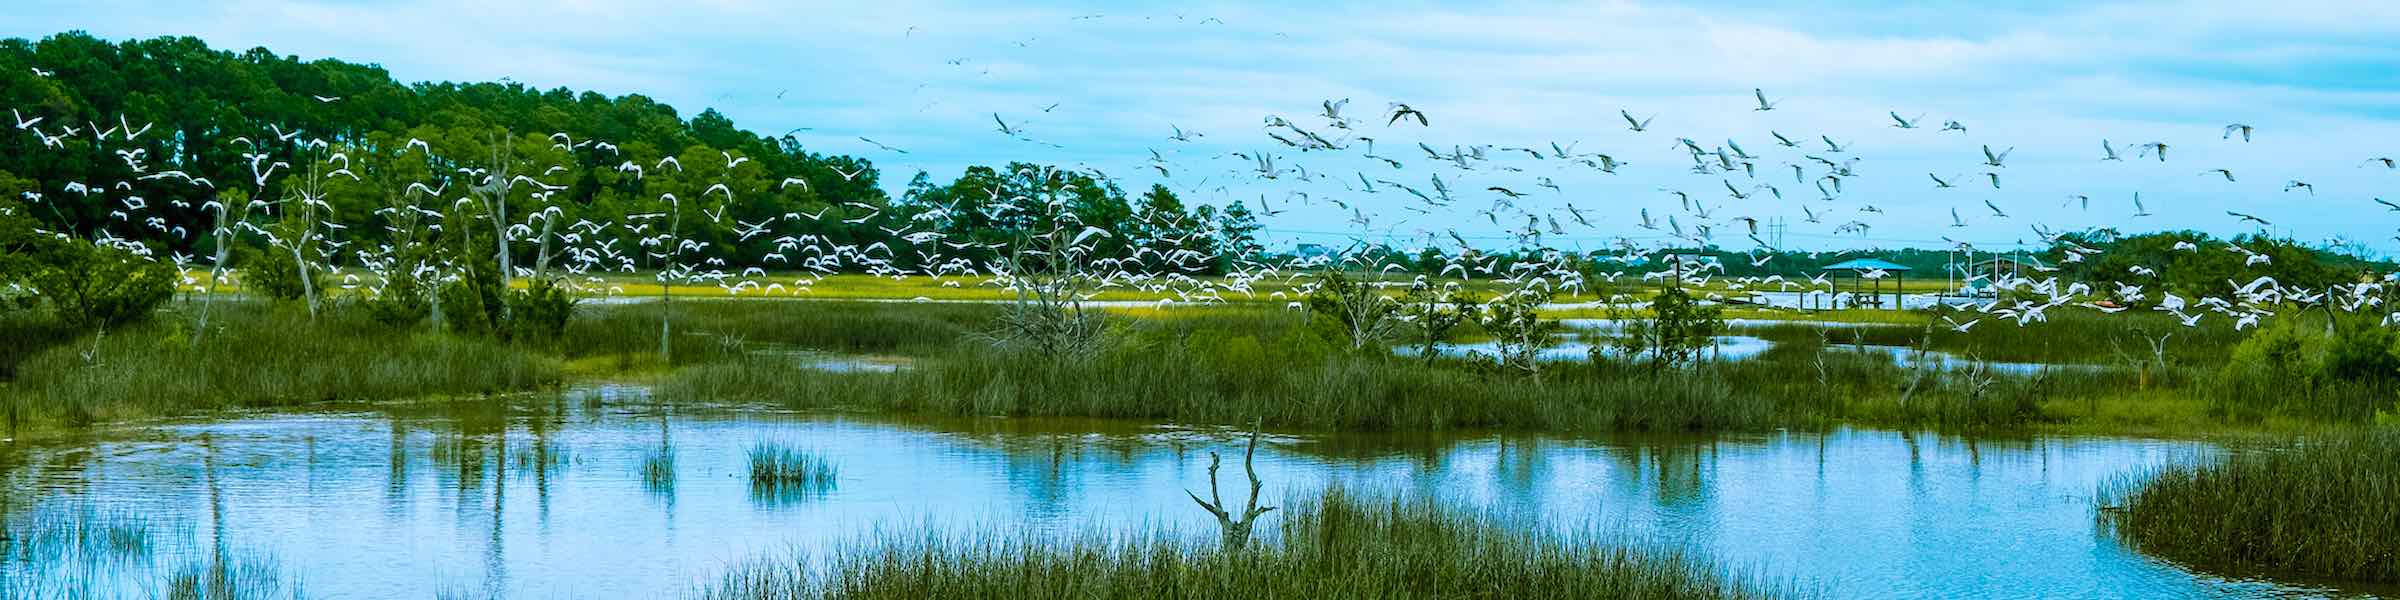 A flock of birds over the salt marshes near Hilton Head Island, SC.